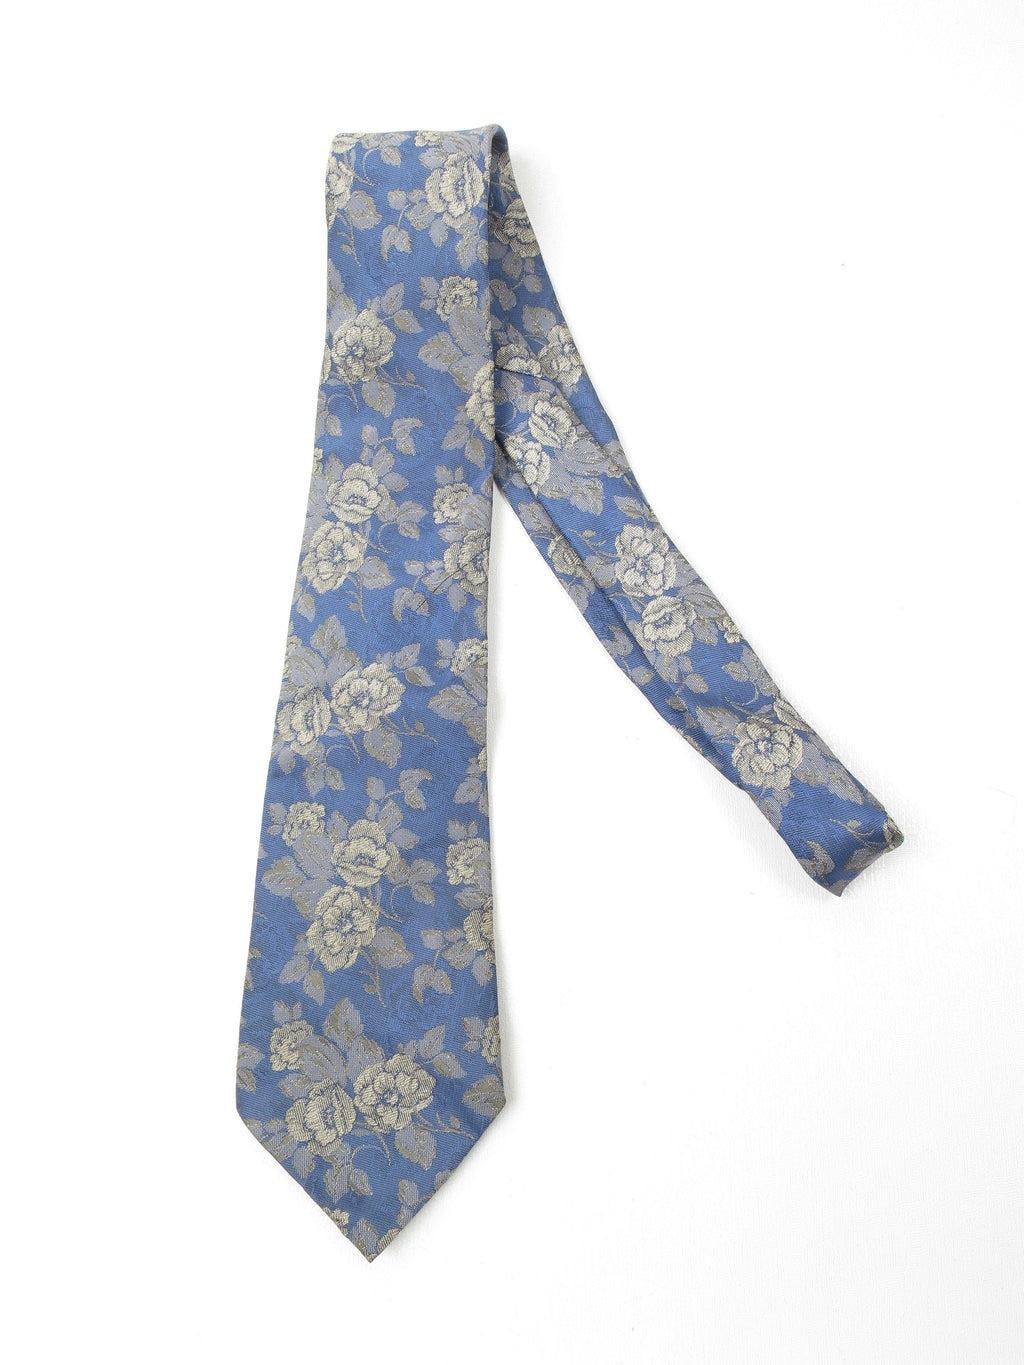 Blue Floral Vintage Tie - The Harlequin